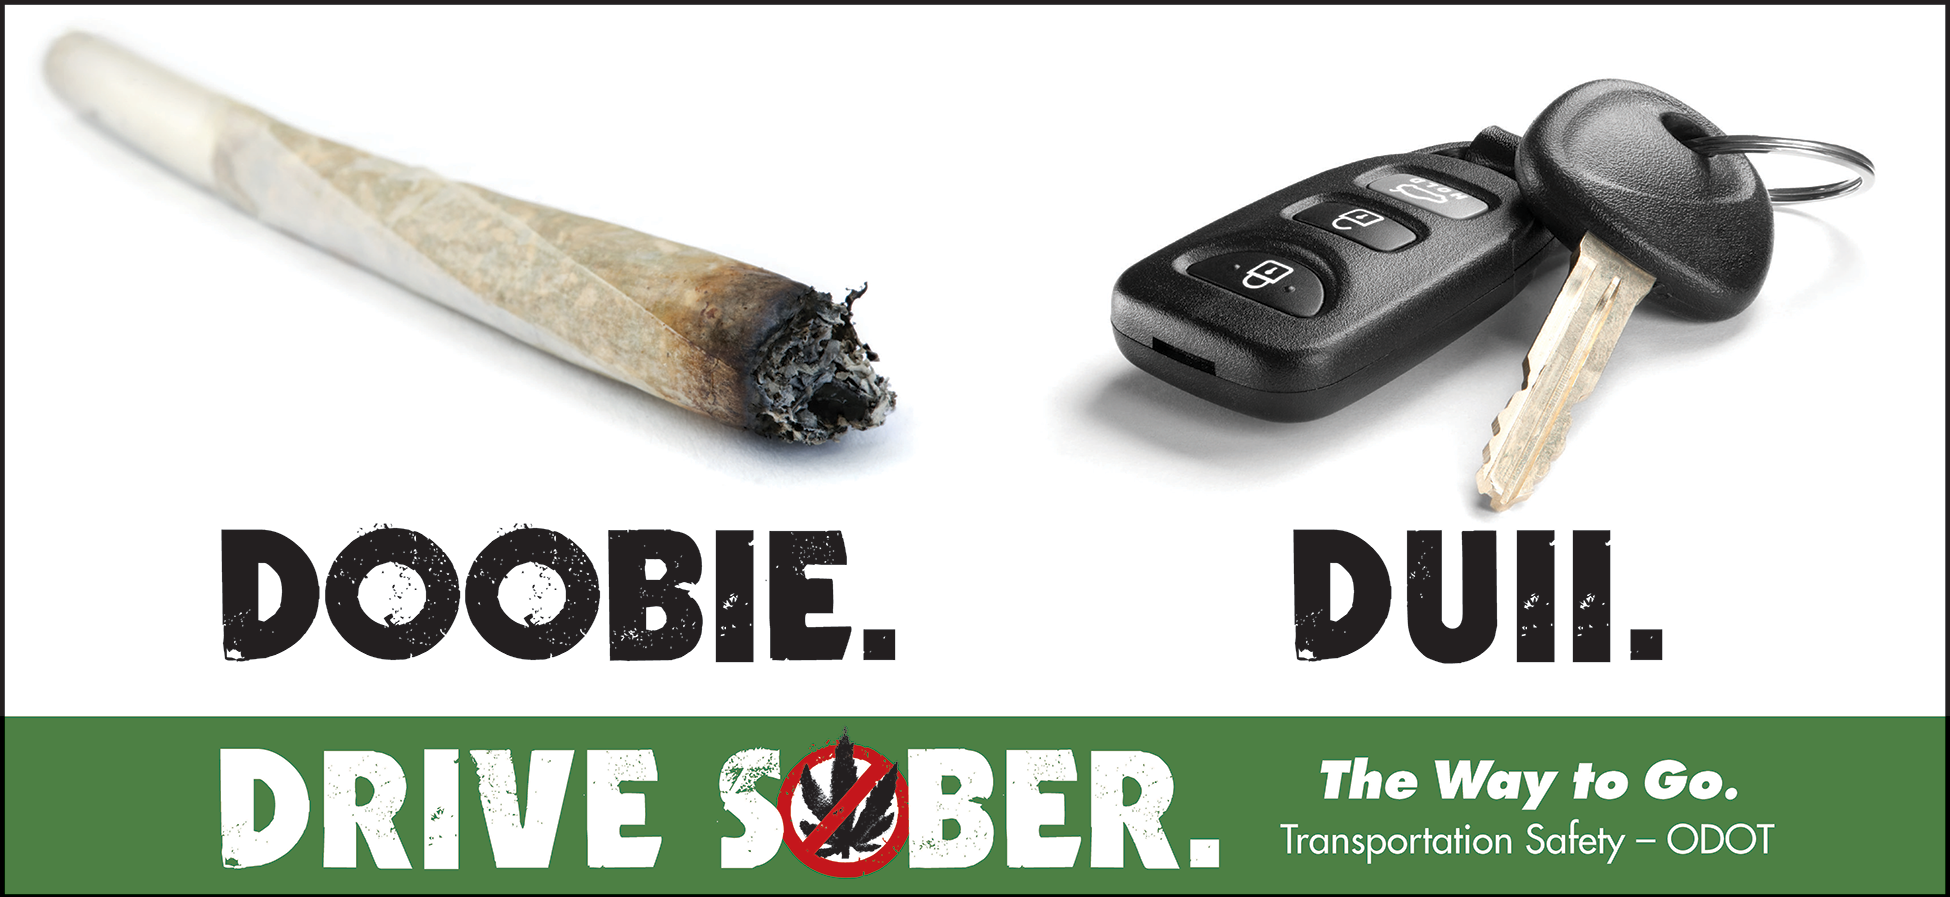 Smoking a Doobie can get you a DUII poster